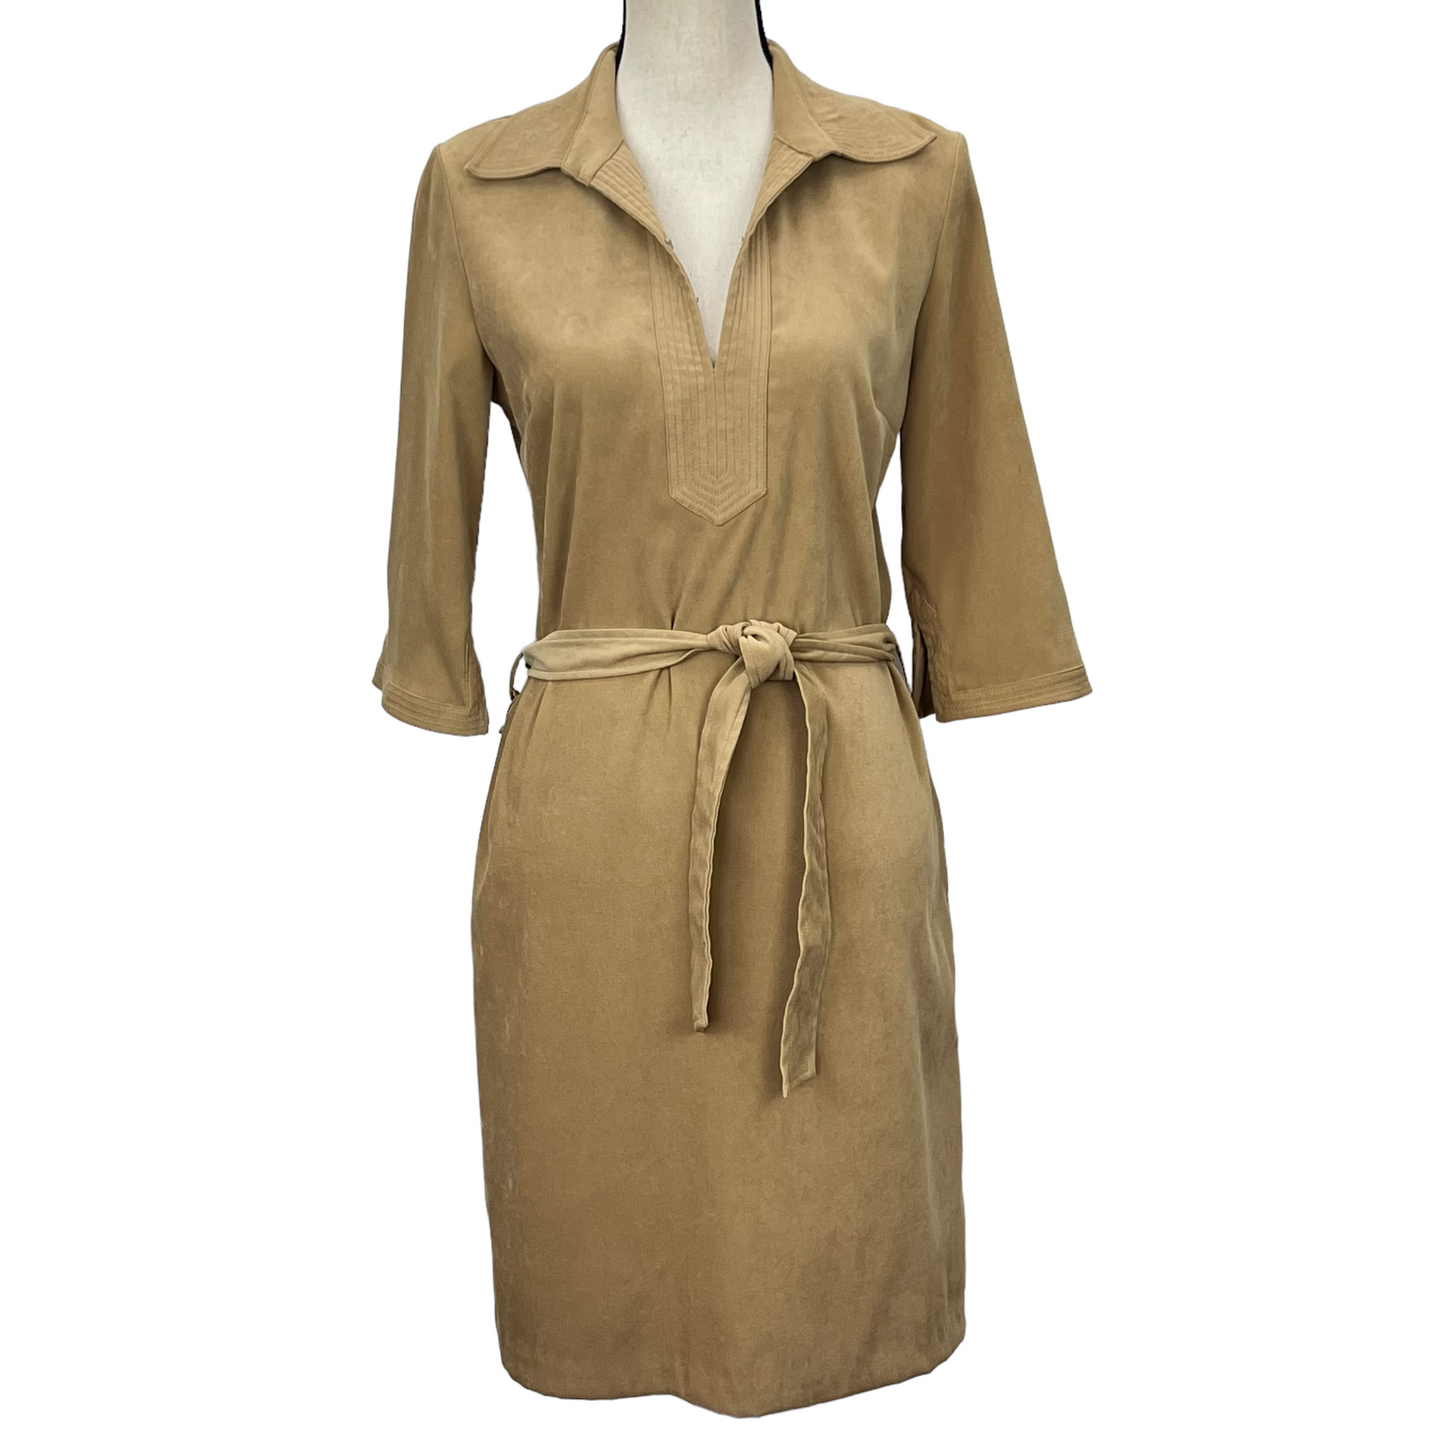 Vintage Faux Suede Camel Shirt Dress Size 8P